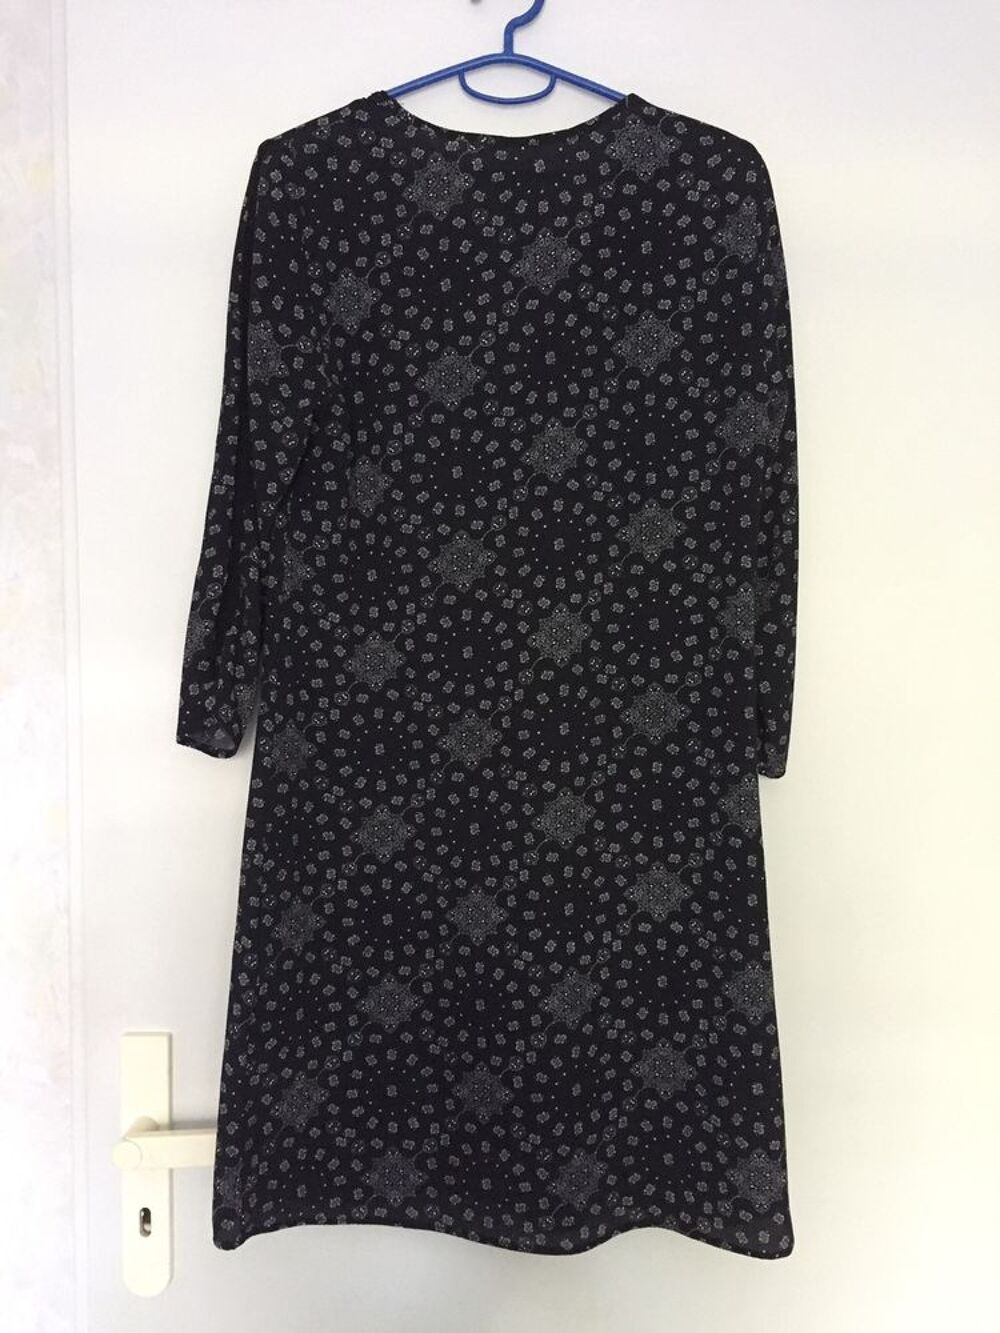 Robe tunique imprim&eacute; noir et blanc - T.36 Vtements